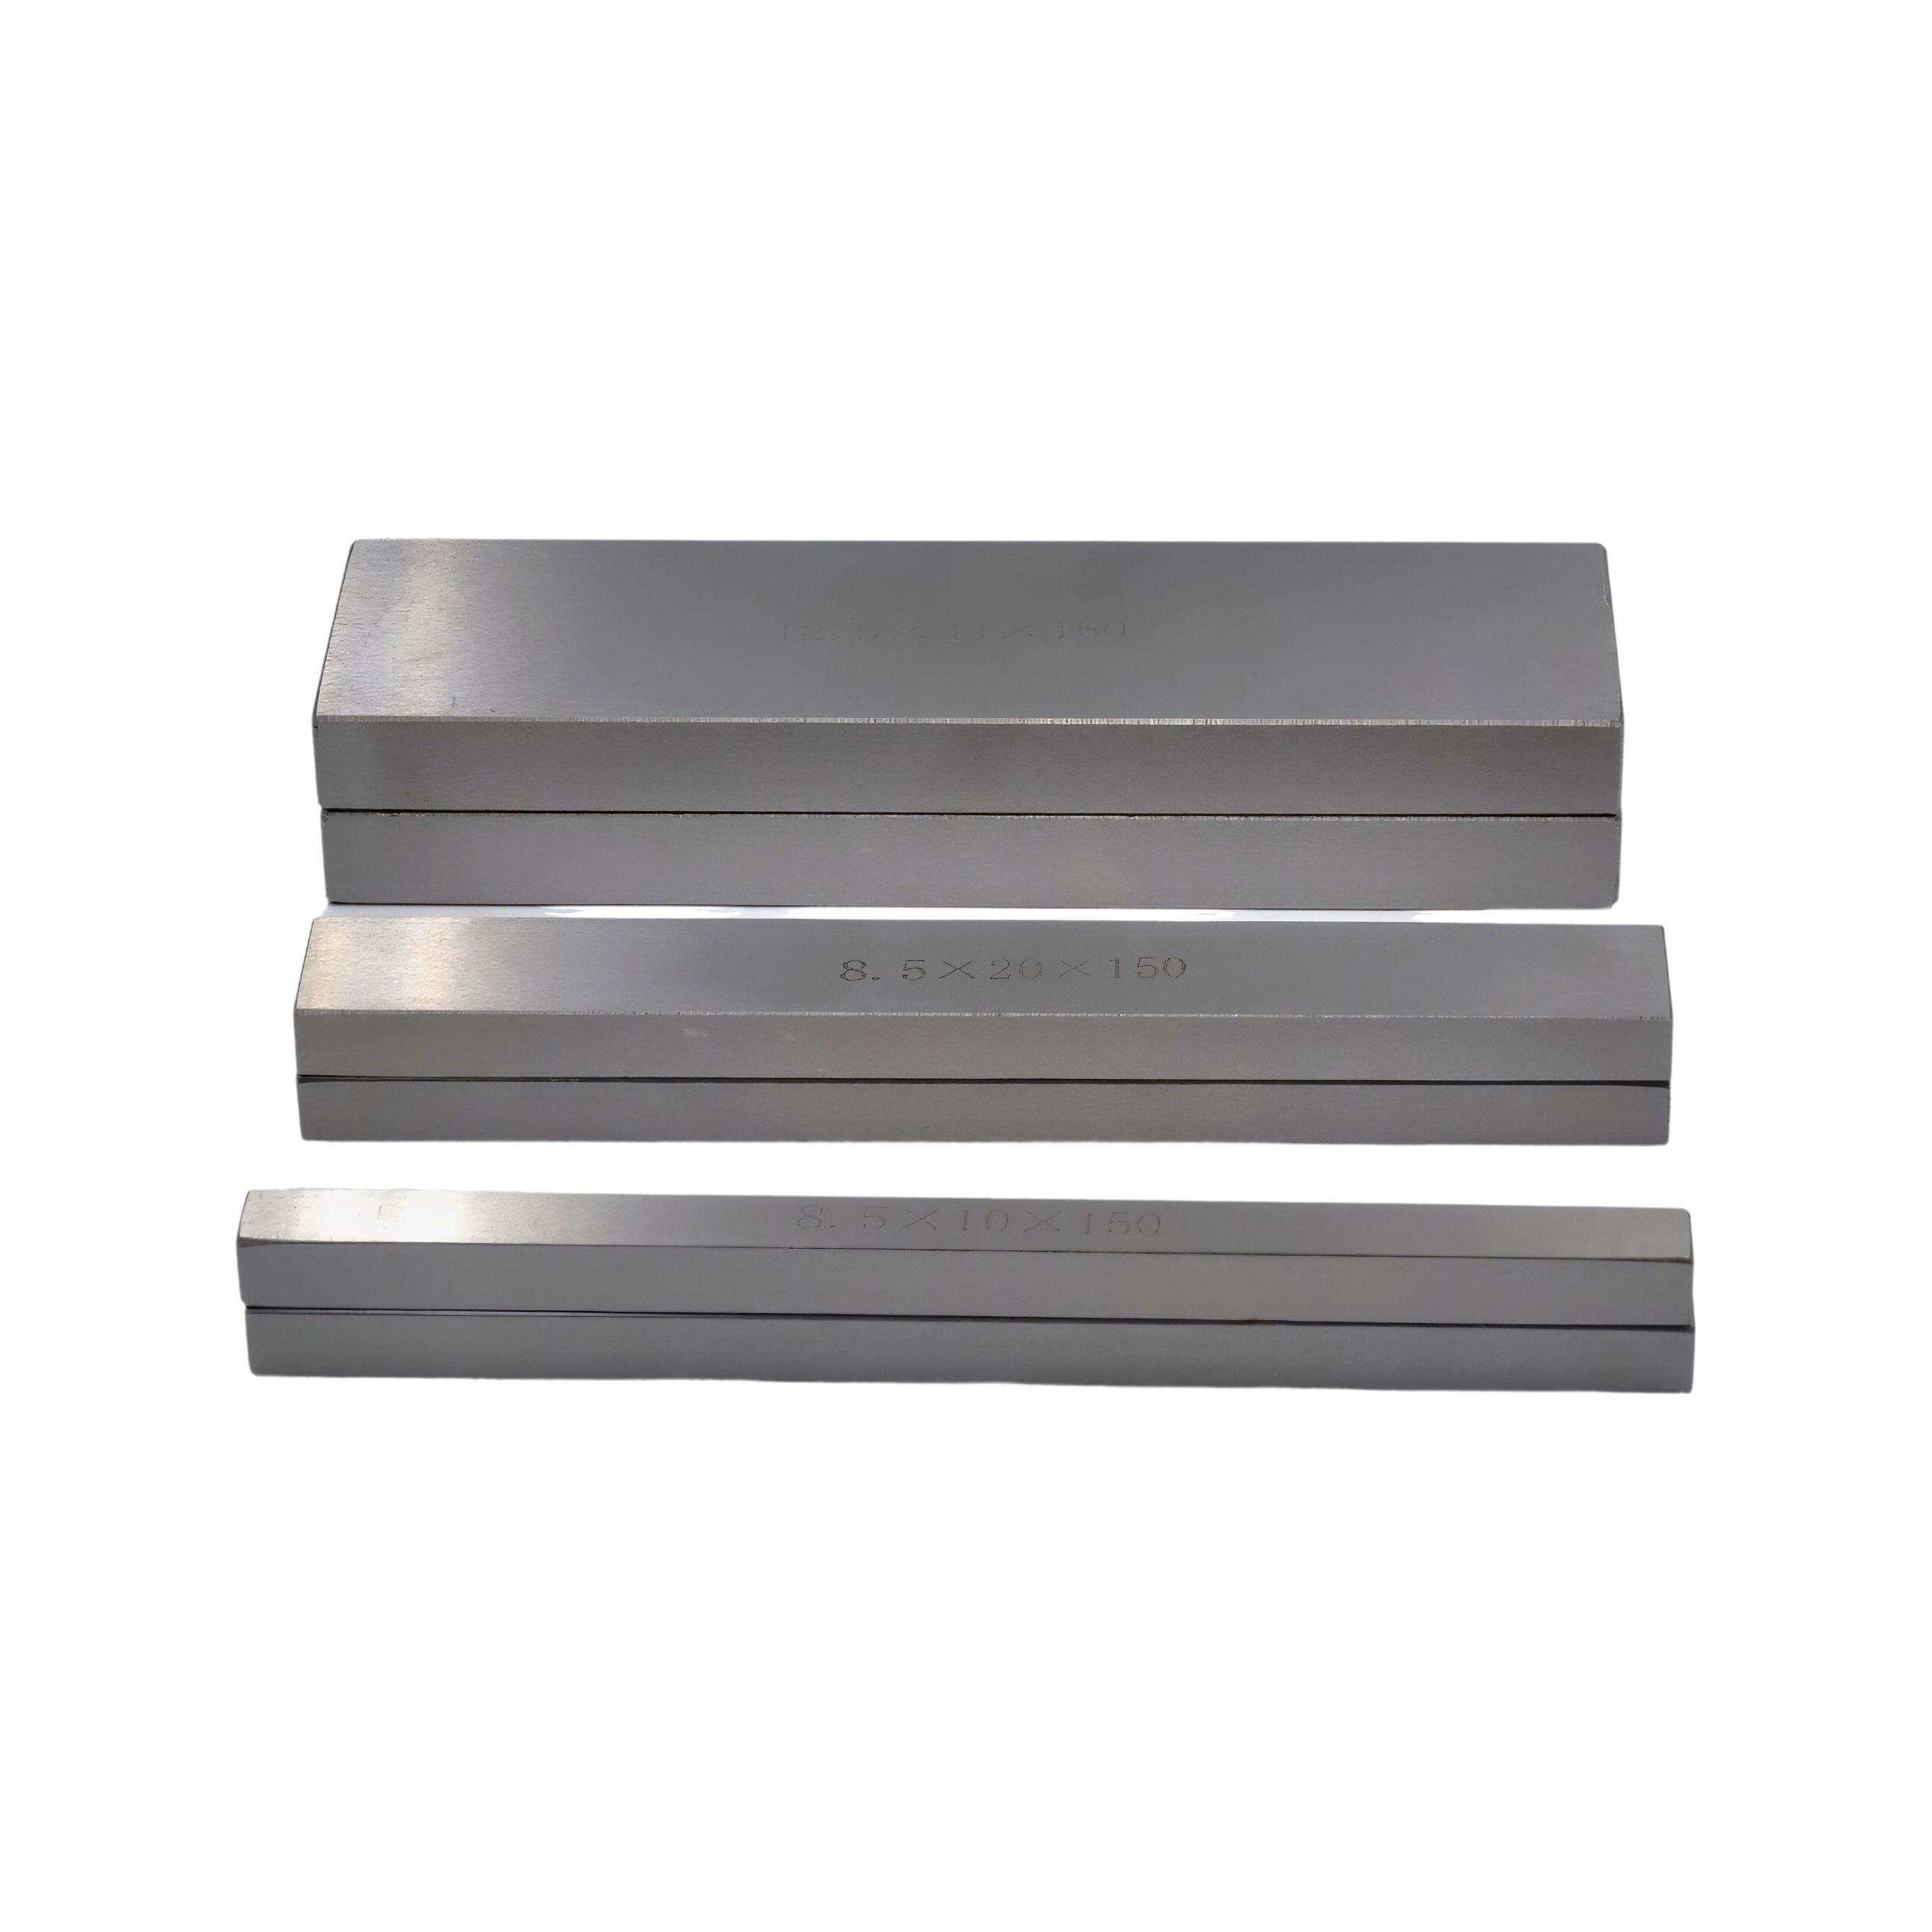  7 pairs Parallel Steel Gauge Block Set Ground Steel 14 plates150 mm Long